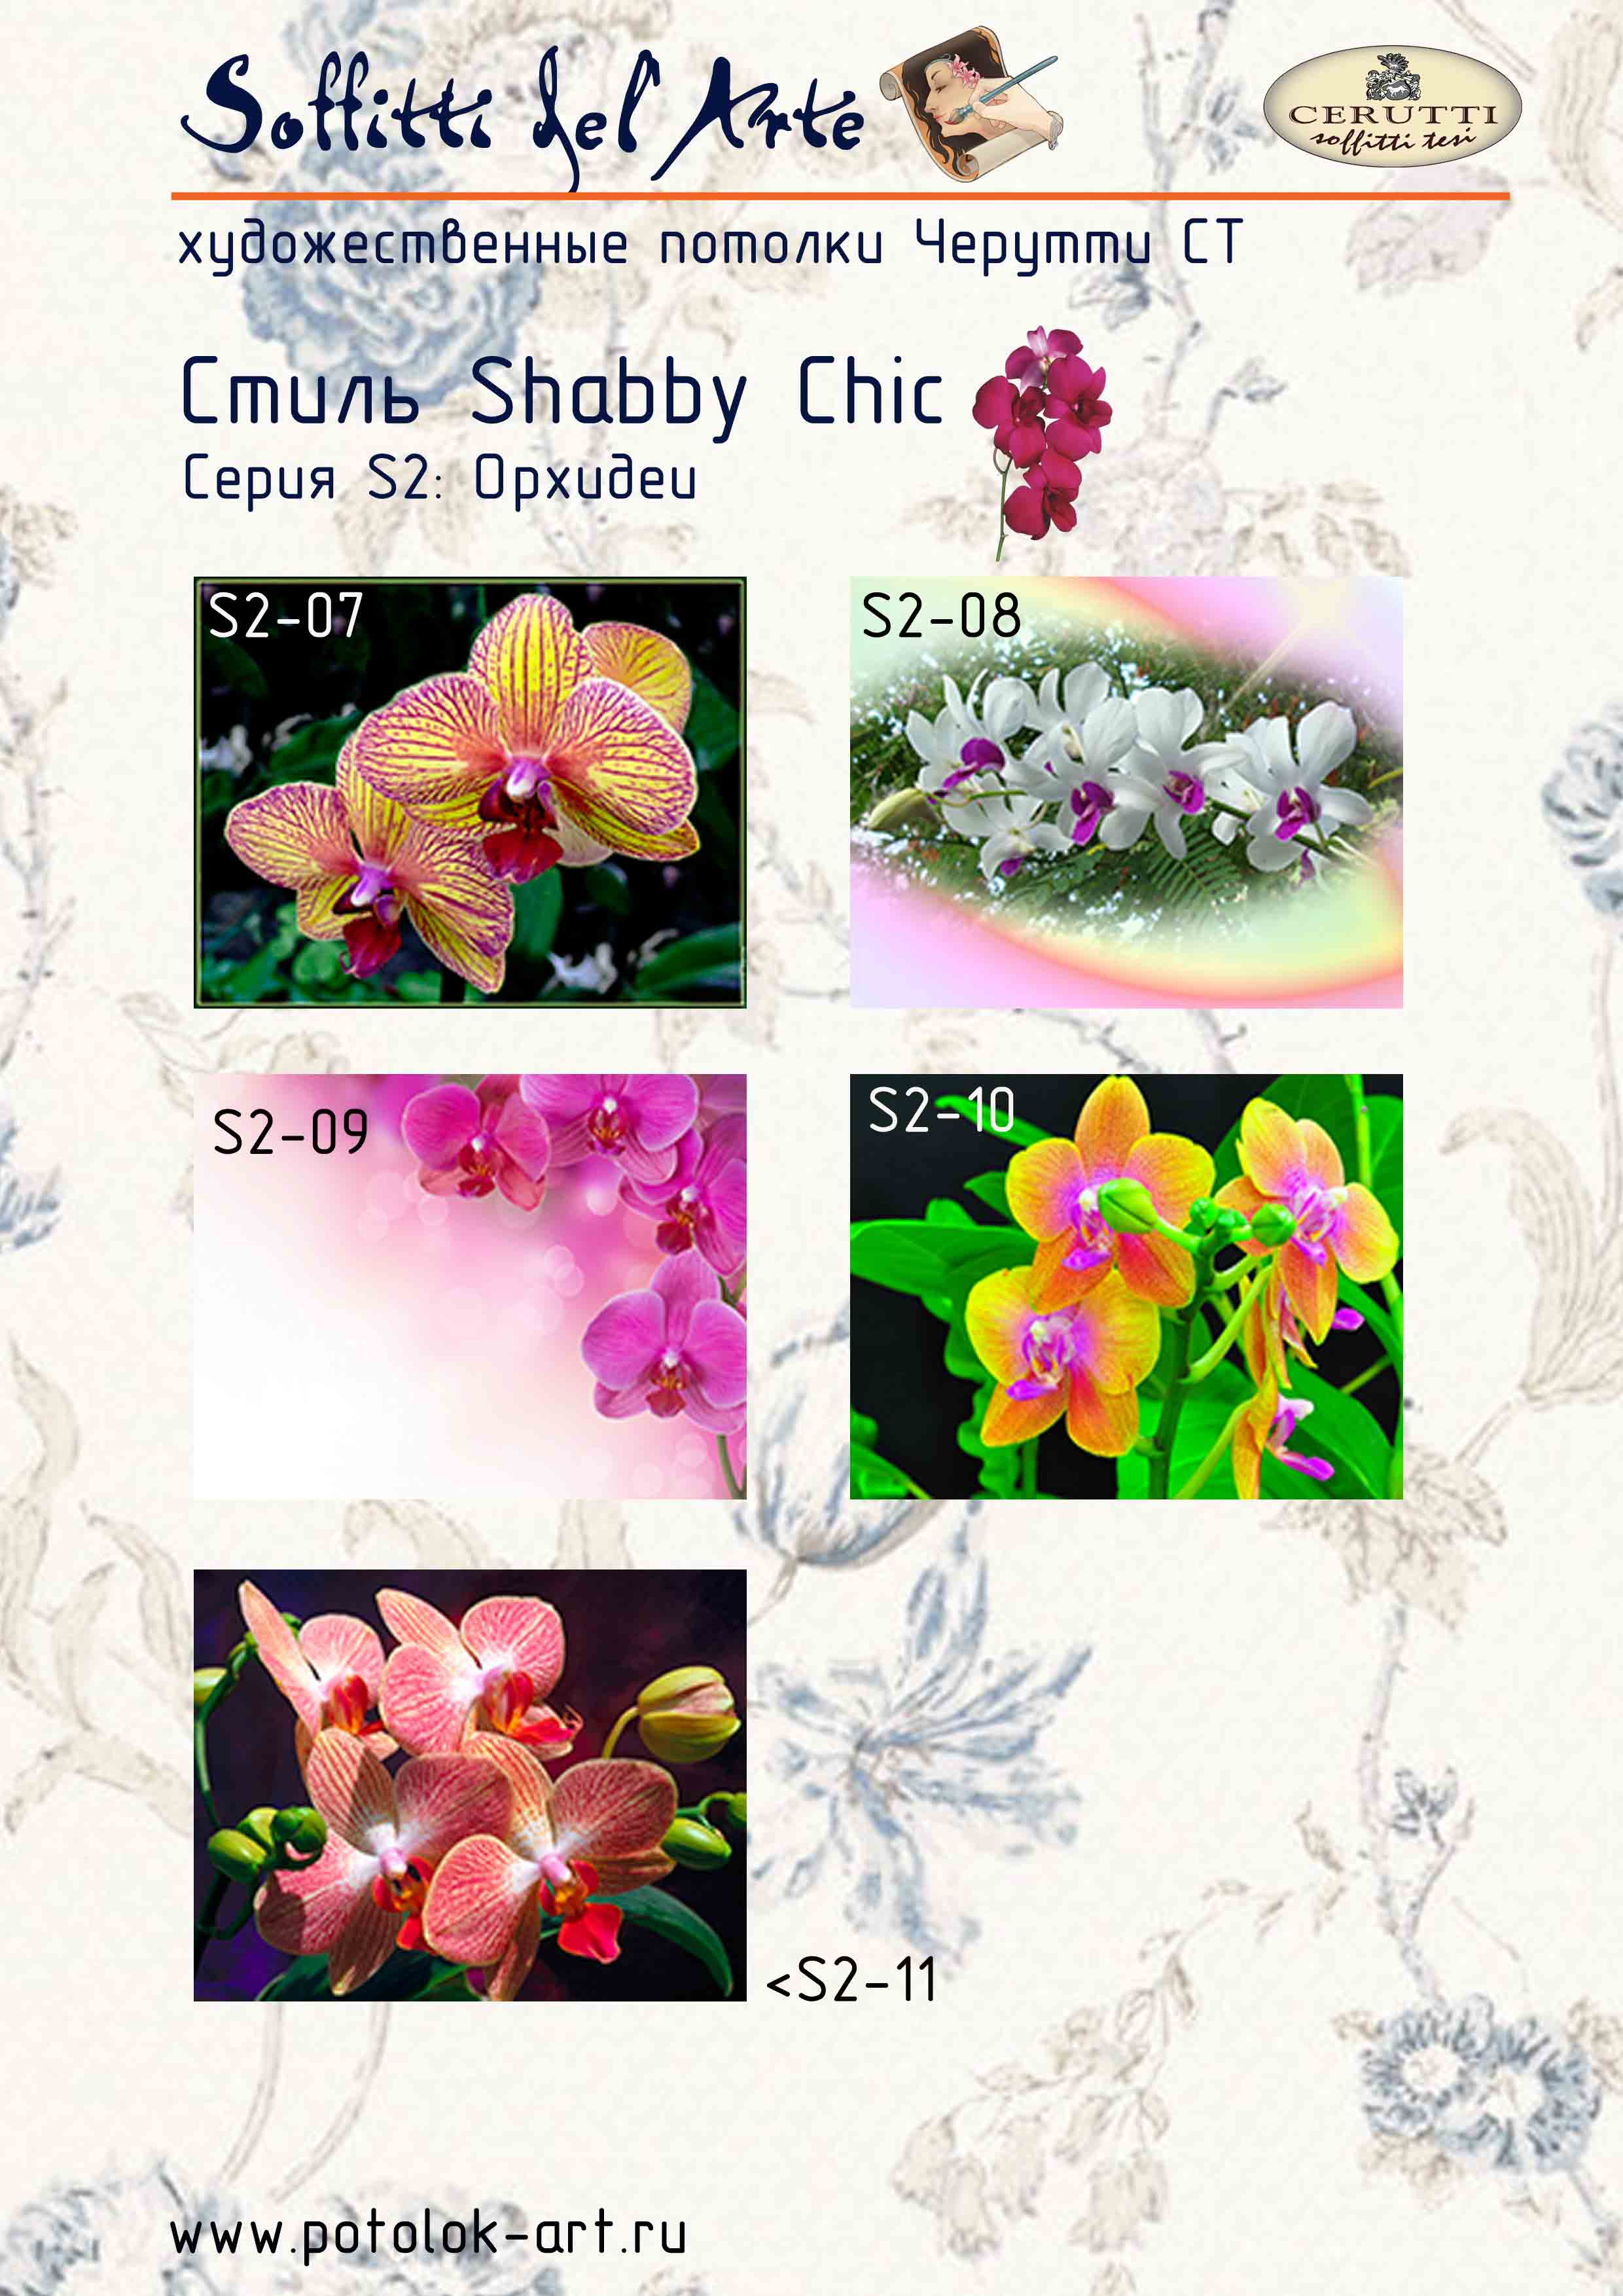 Орхидеи имеют различные оттенки и причудливые формы.